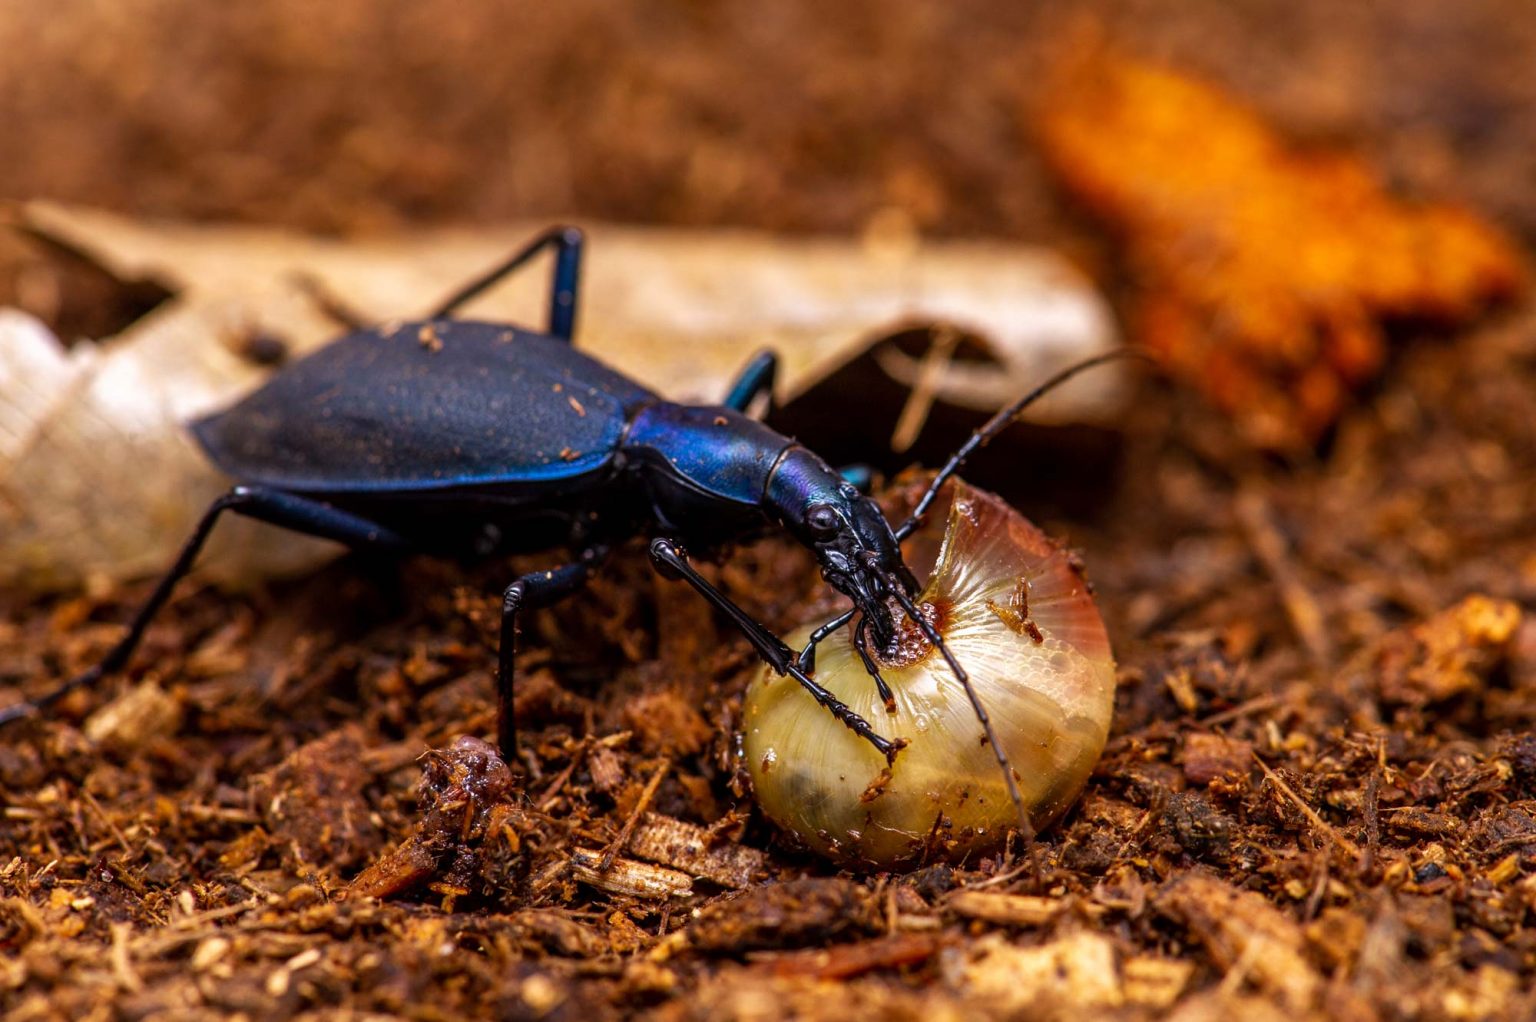 カタツムリを食べる虫 虫の写真と生態なら昆虫写真図鑑「ムシミル」